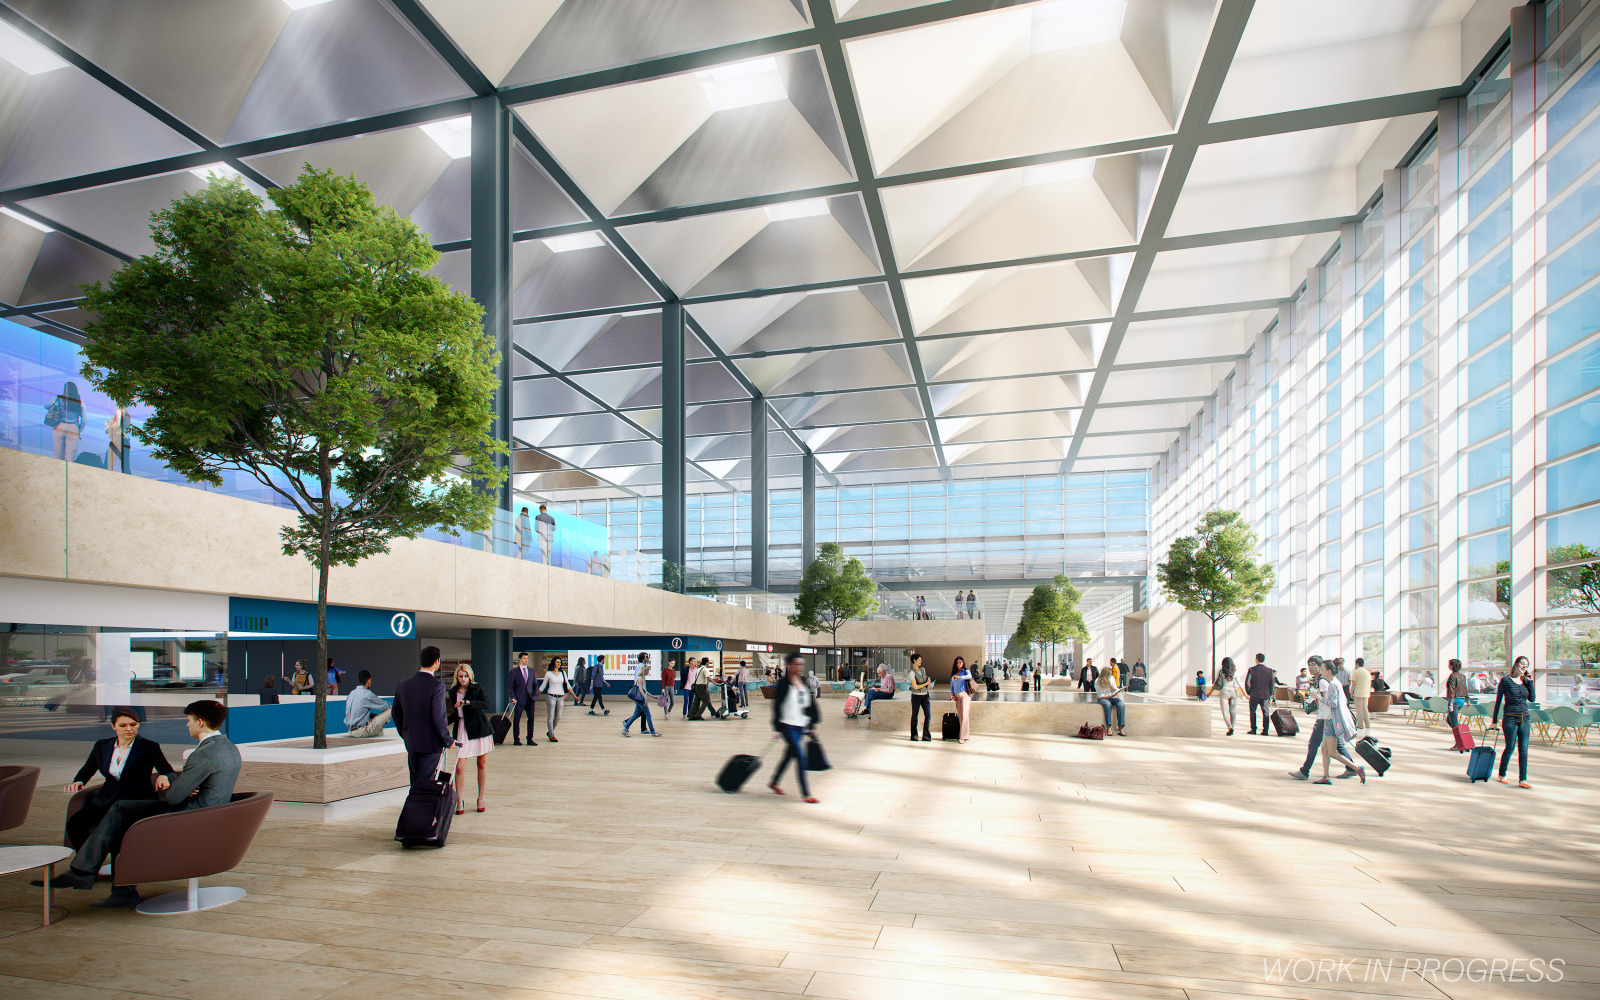   Demande de permis de construire pour l'extension de l'aéroport Aéroport Marseille Provence comprenant la création d'un coeur d'aérogare et le 